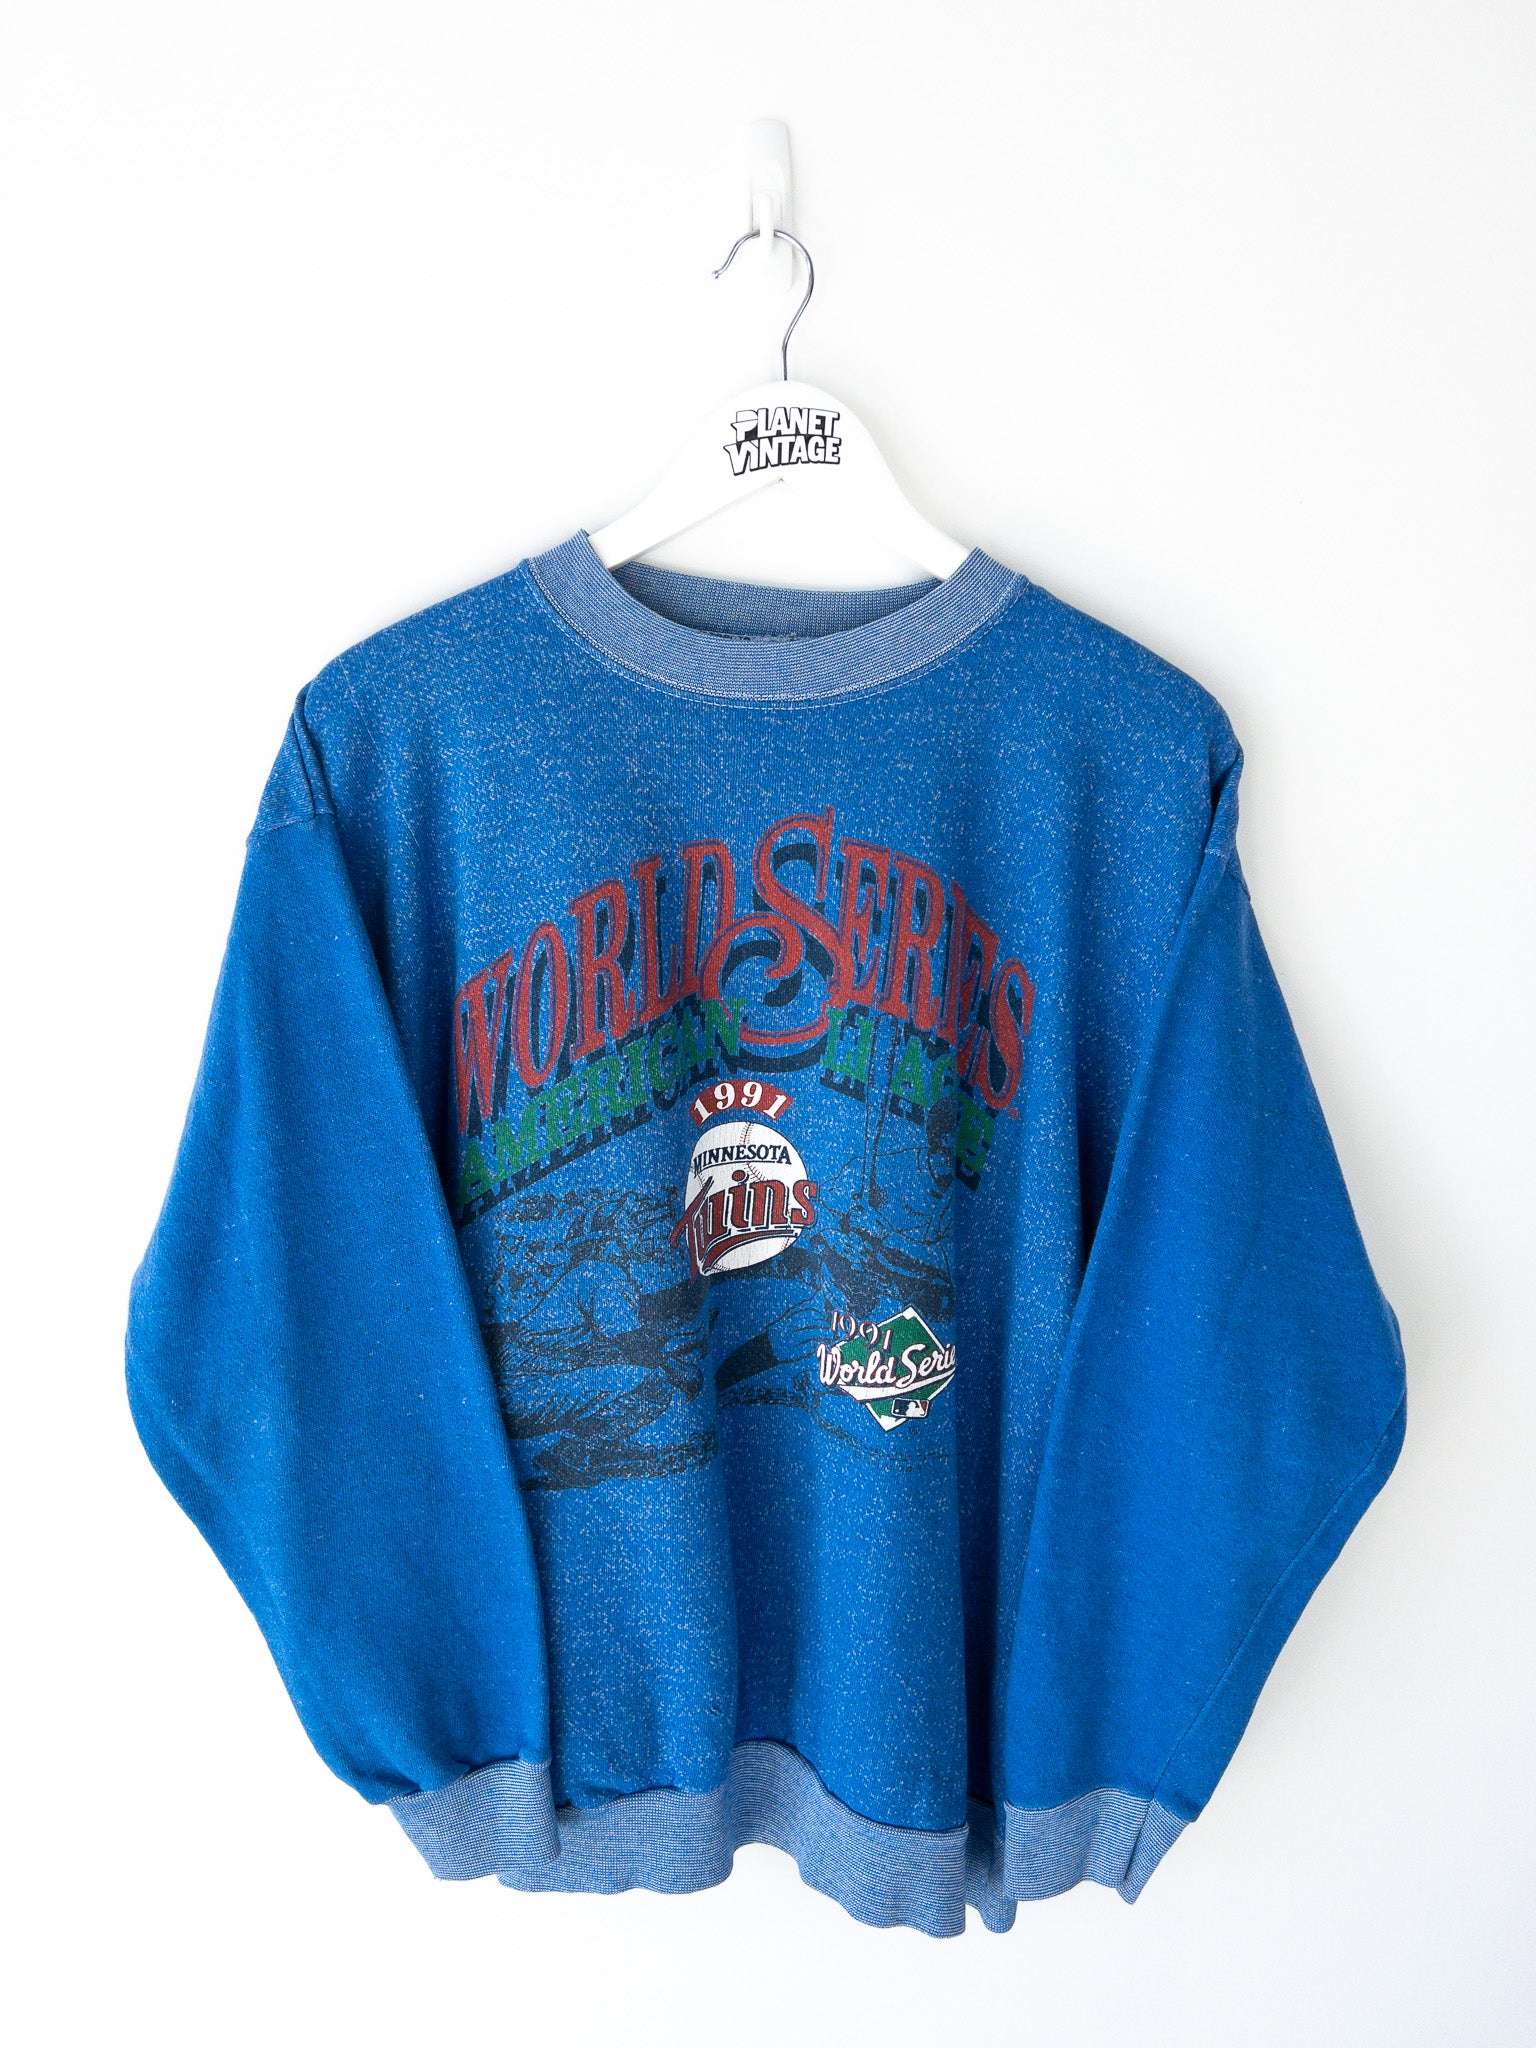 Vintage Minnesota Twins World Series 1991 Sweatshirt (L)